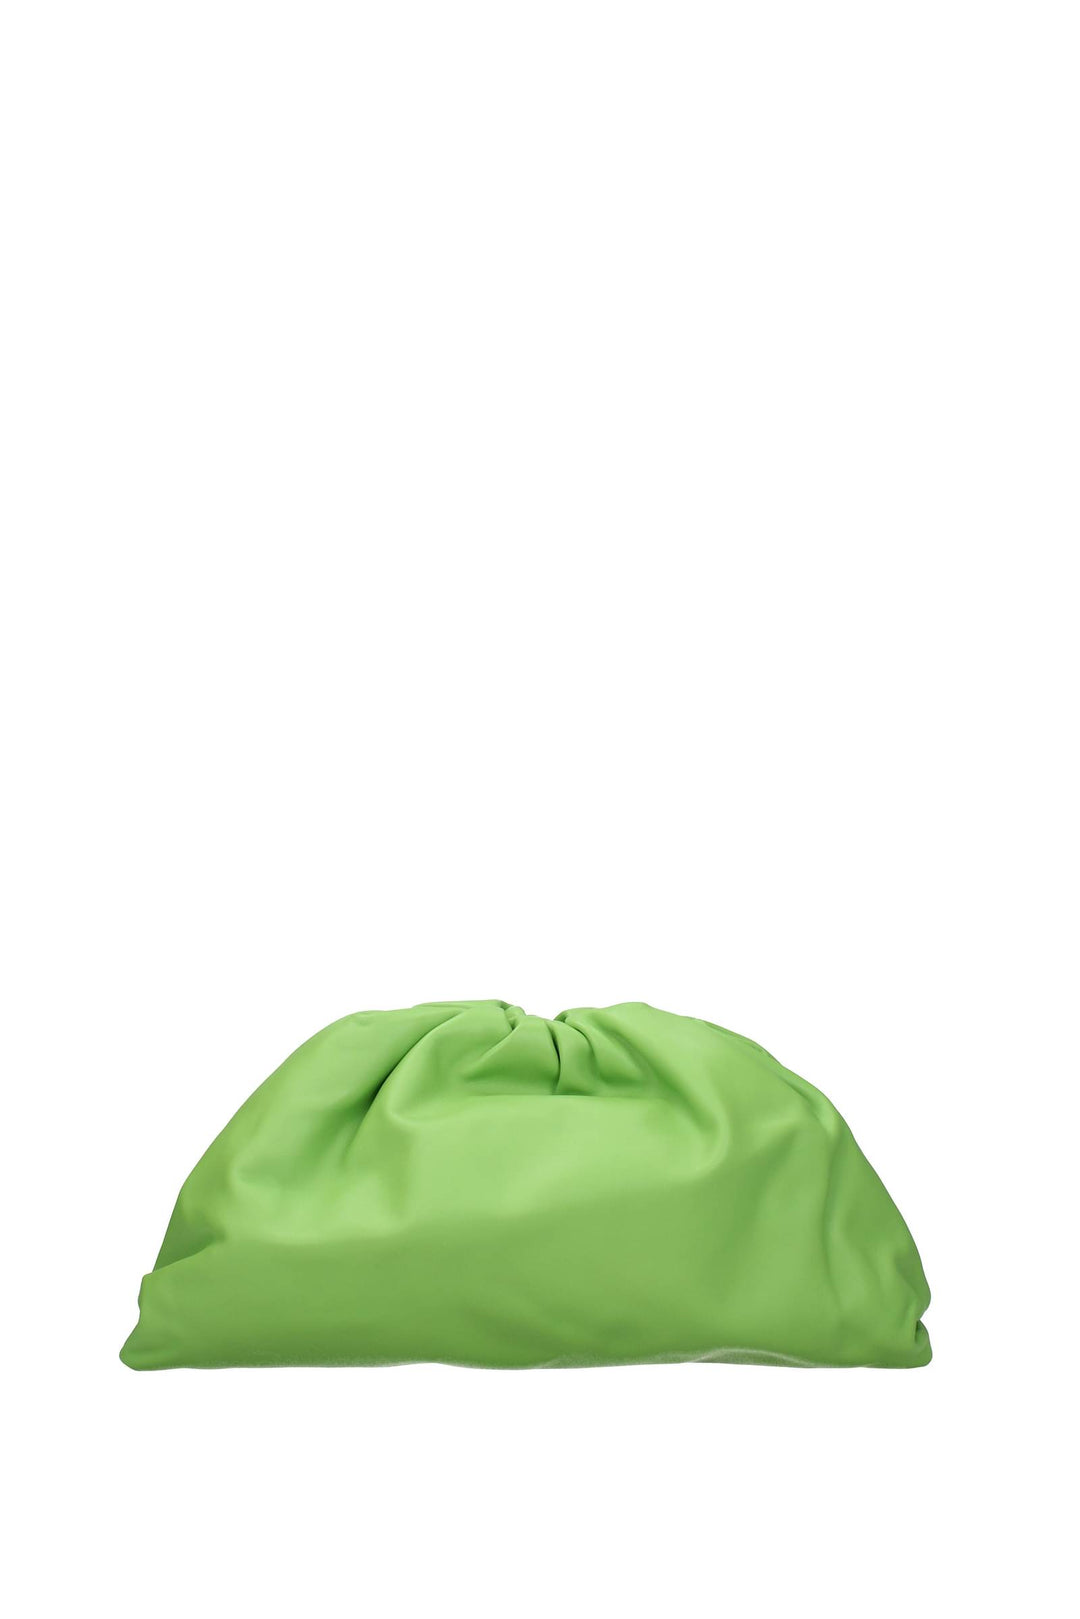 Pochette Pelle Verde Felce - Bottega Veneta - Donna